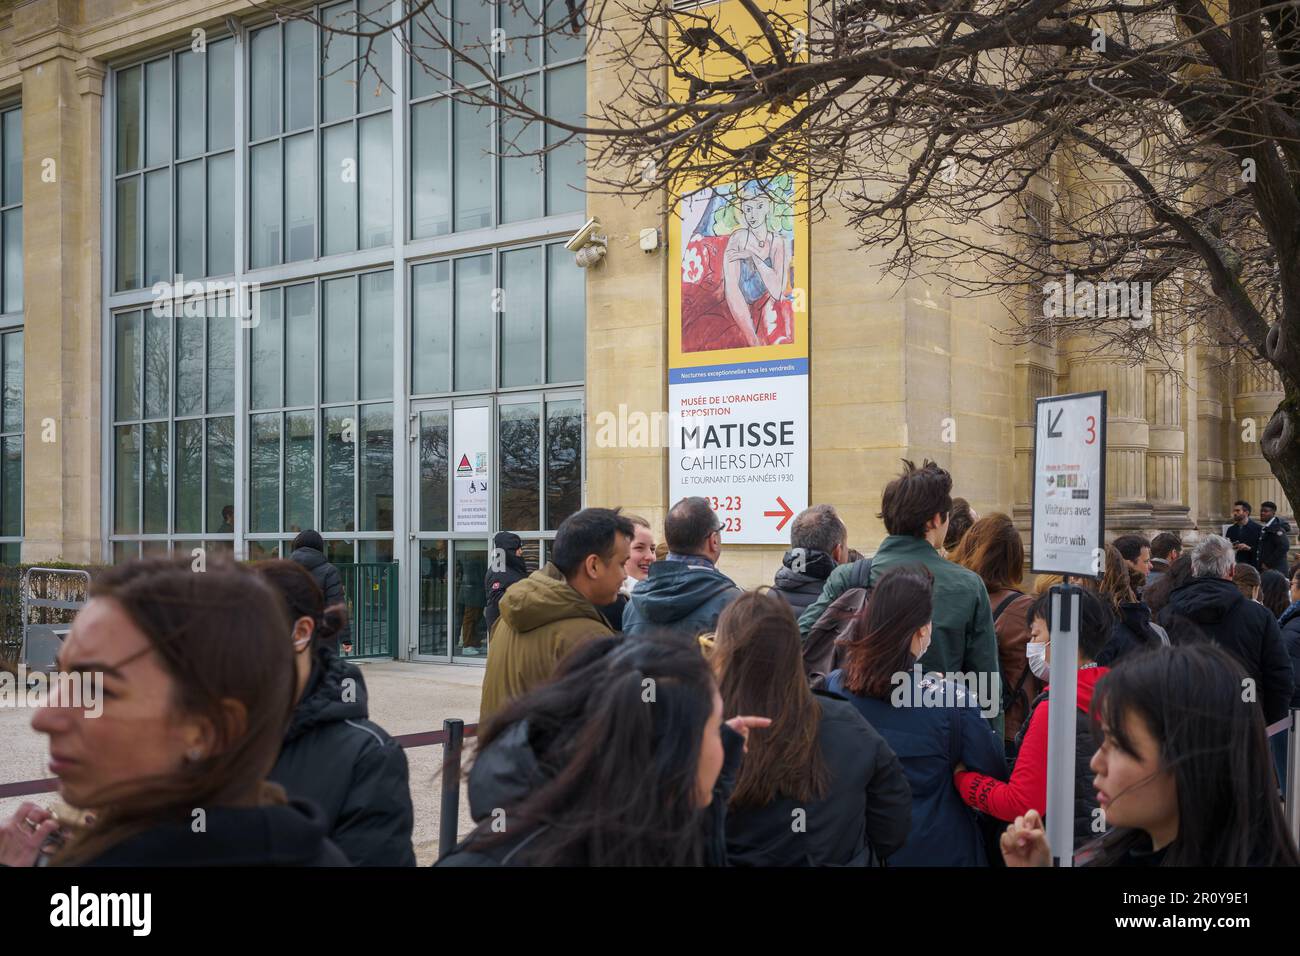 Line outside the Matisse exhibition in Musée de l'Orangerie Paris, France. March 25, 2023. Stock Photo